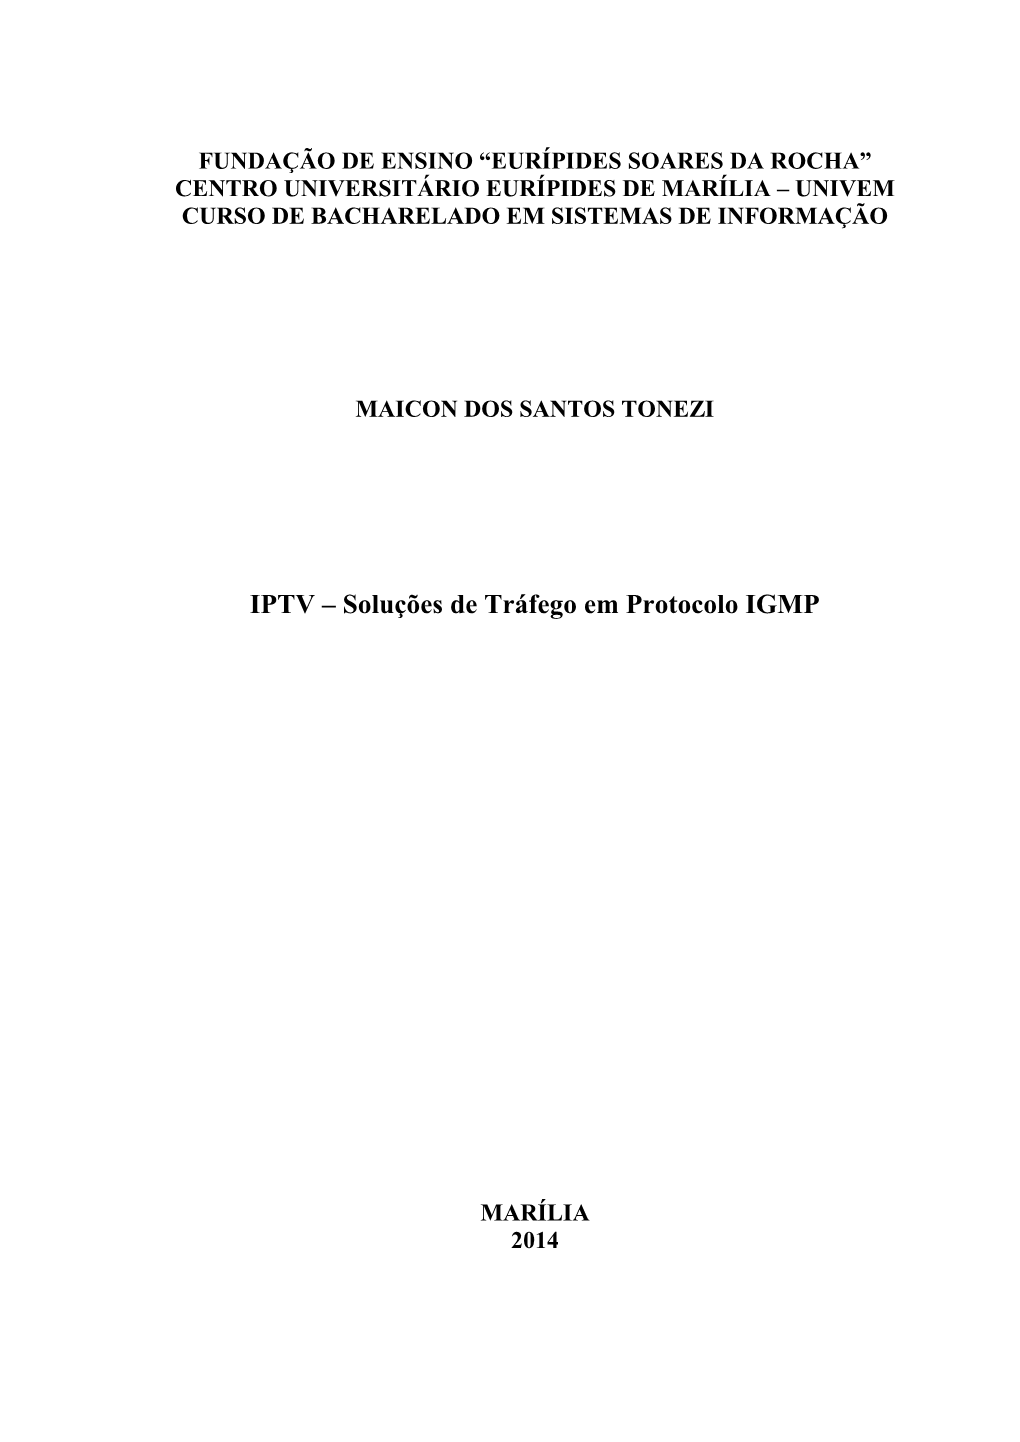 IPTV – Soluções De Tráfego Em Protocolo IGMP